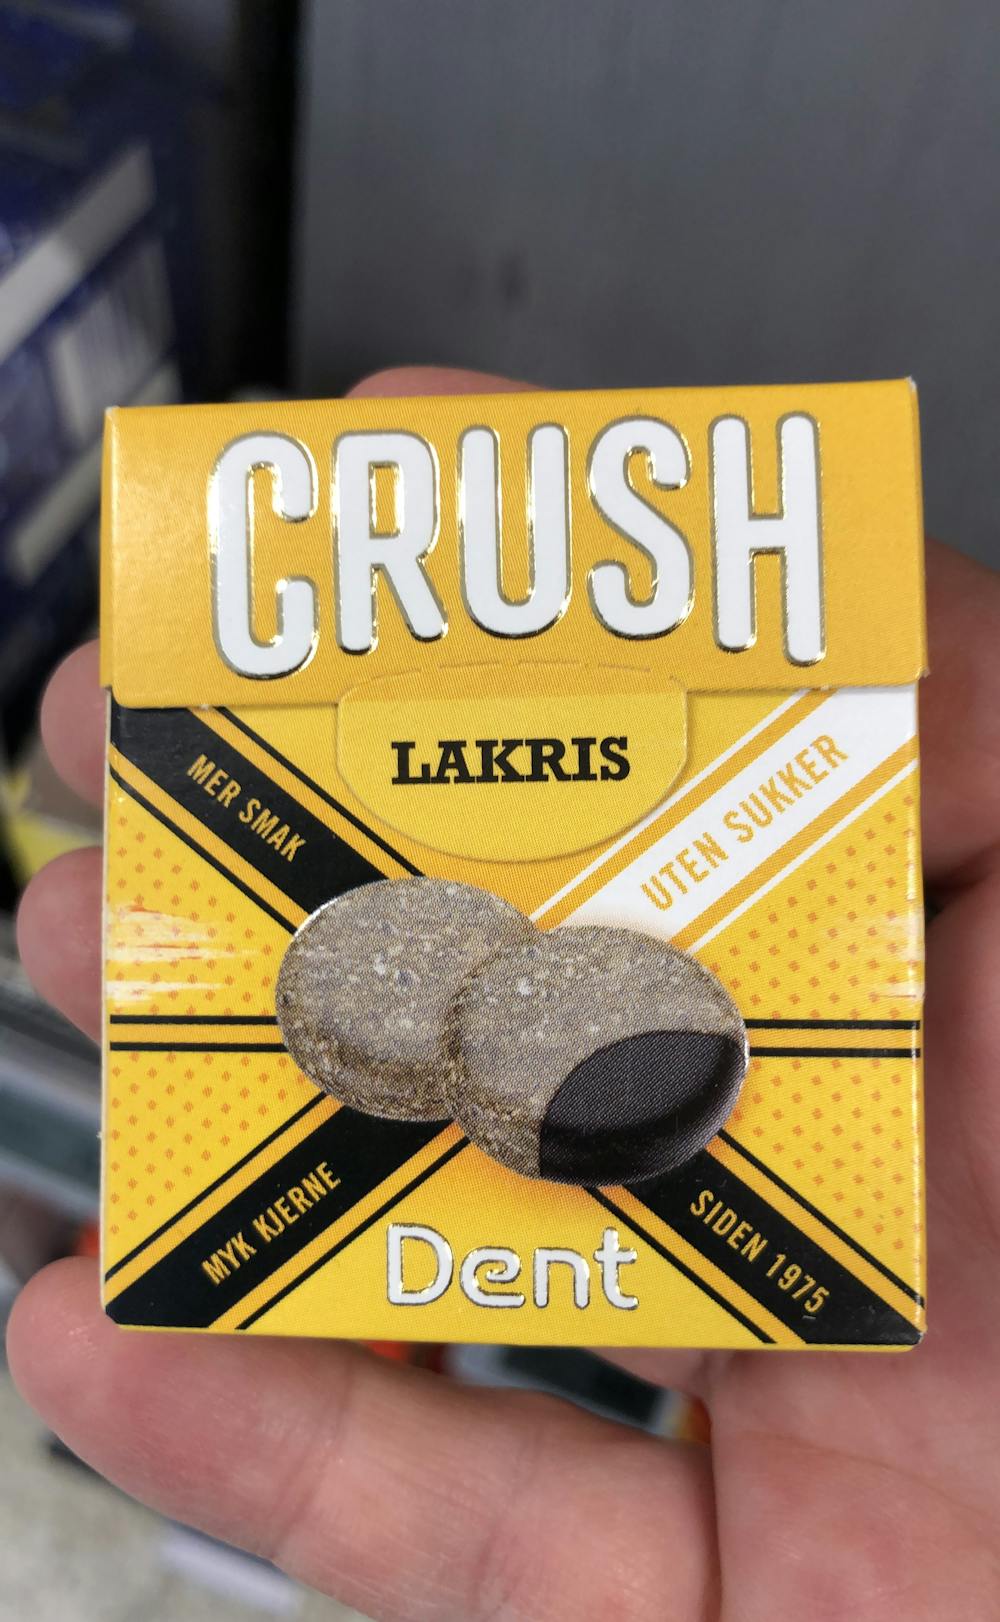 Crush lakris, Dent